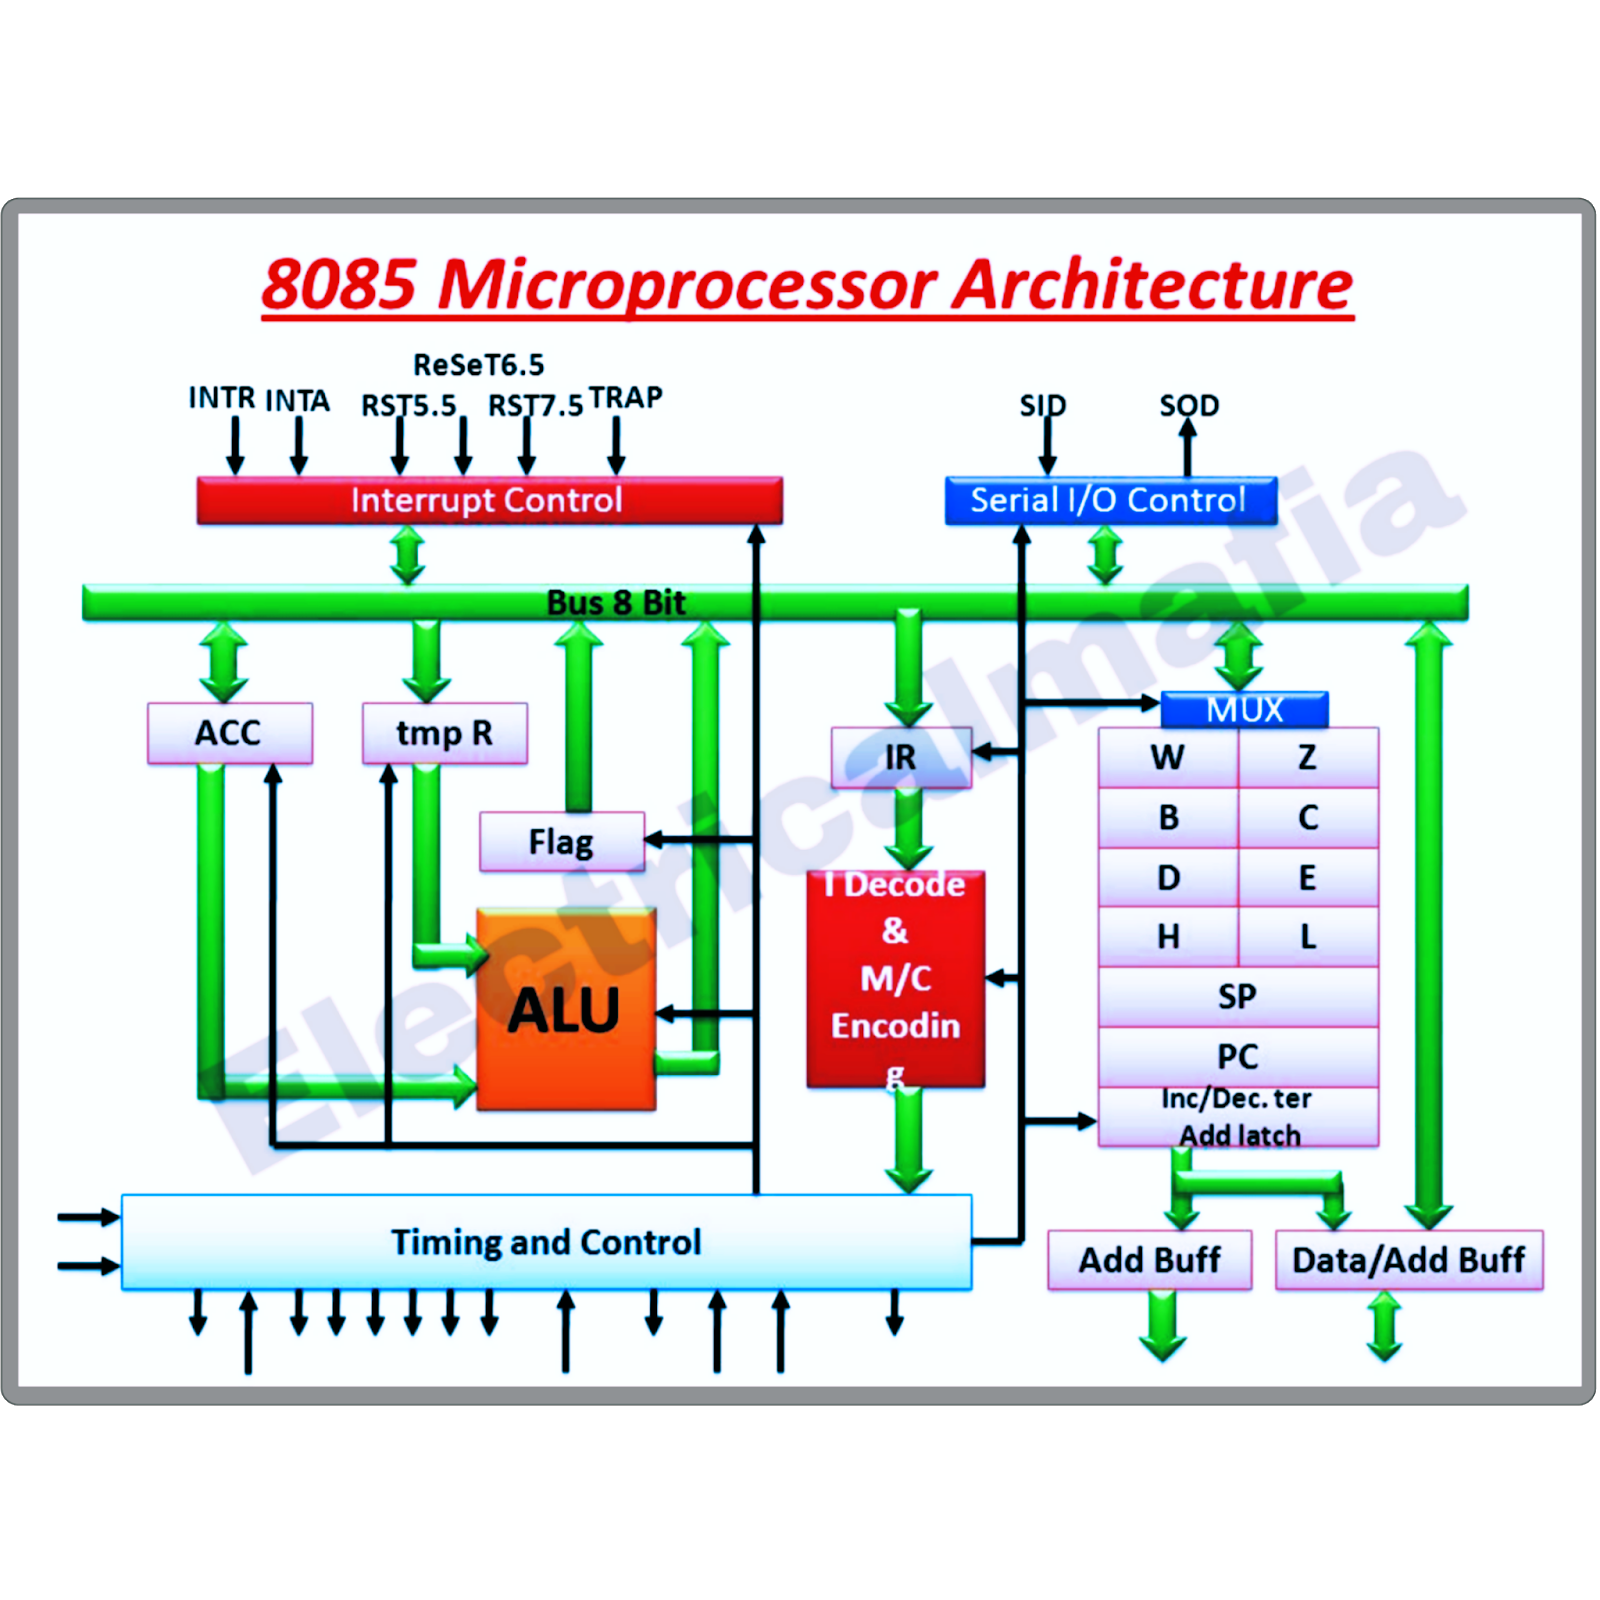 Architecture of 8085 microprocessor - ElectricalMafia